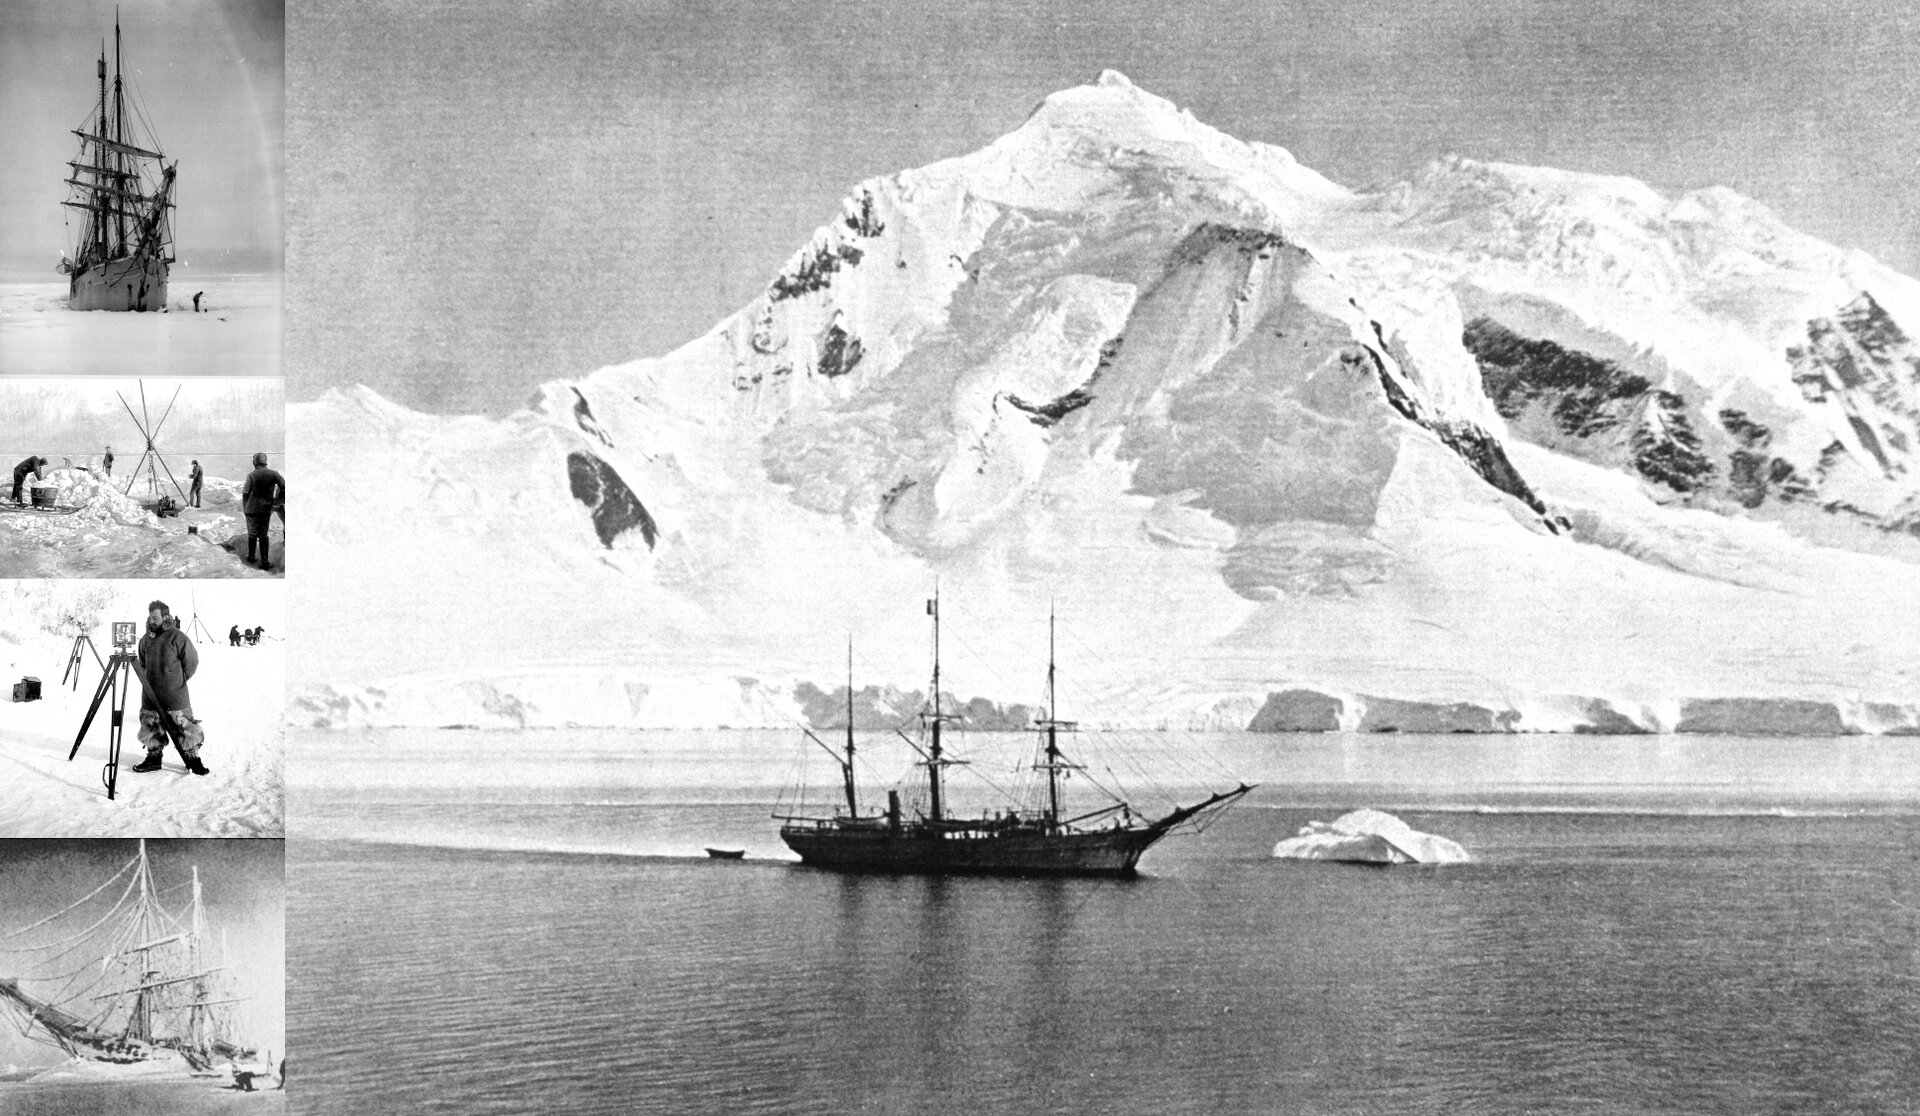 Czarno‑biała fotografia prezentuje trójmasztowy statek płynący po morzu, na tle białych, ośnieżonych gór. W lewej stronie zdjęcia widnieją cztery, niewielkie, czarno‑białe fotografie: okrętu na lodzie, mężczyzn rozbijających namiot, mężczyzny z aparatem i ruin łodzi.